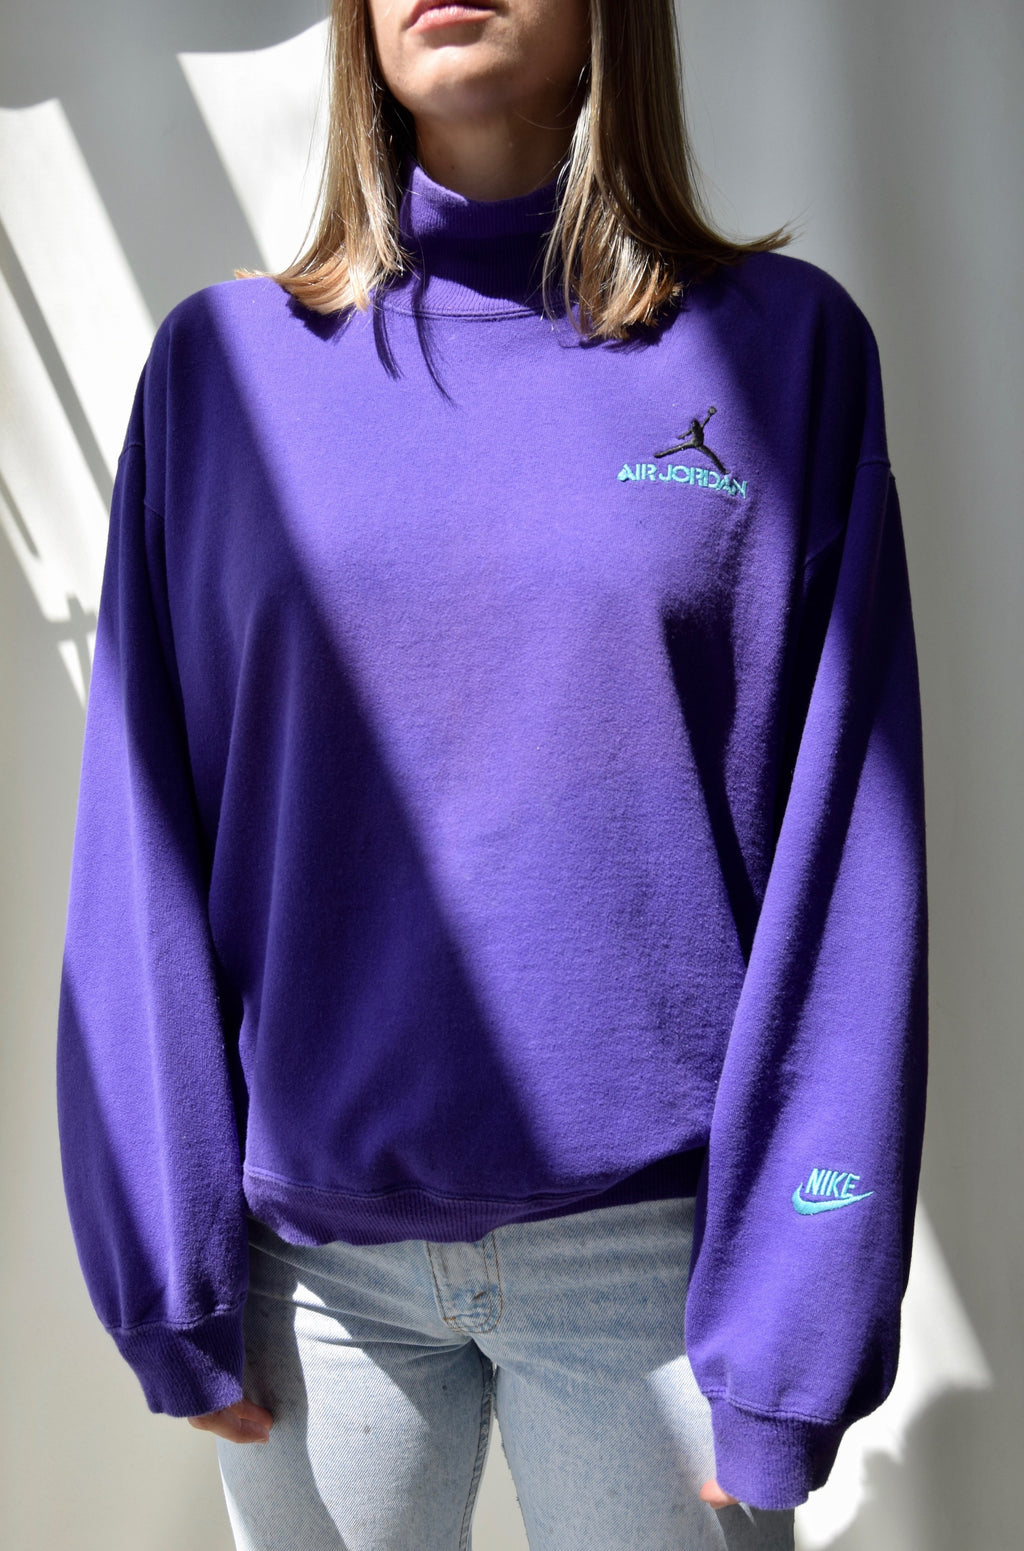 90's Purple Nike Air Jordan Sweatshirt